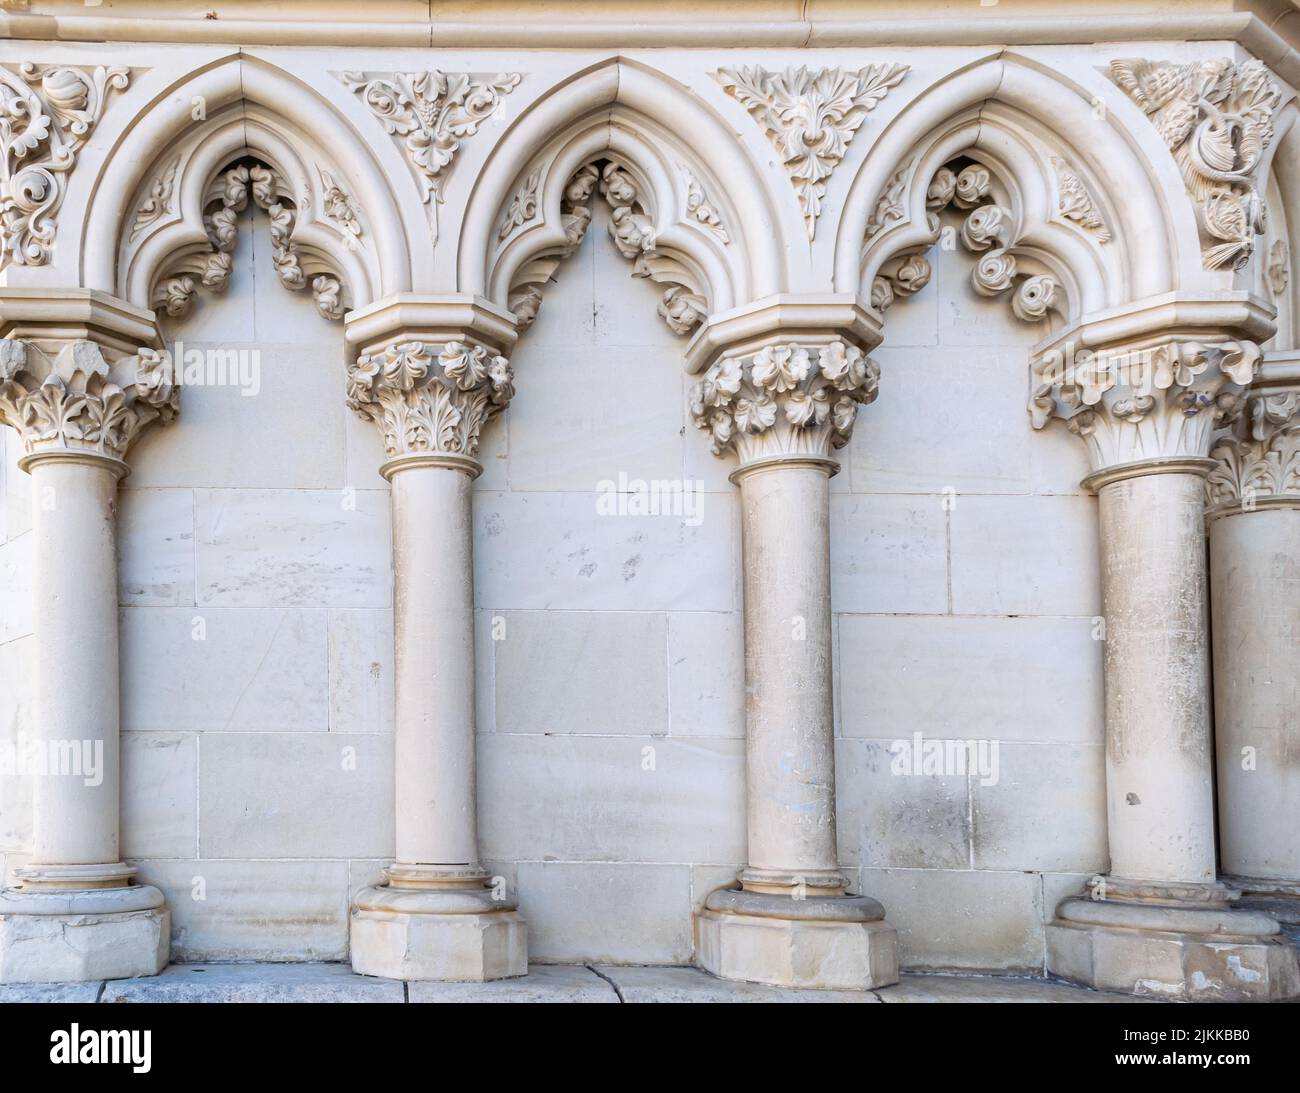 Columnas y ornamento floral en la fachada de la catedral gótica de Cuenca, España Stockfoto